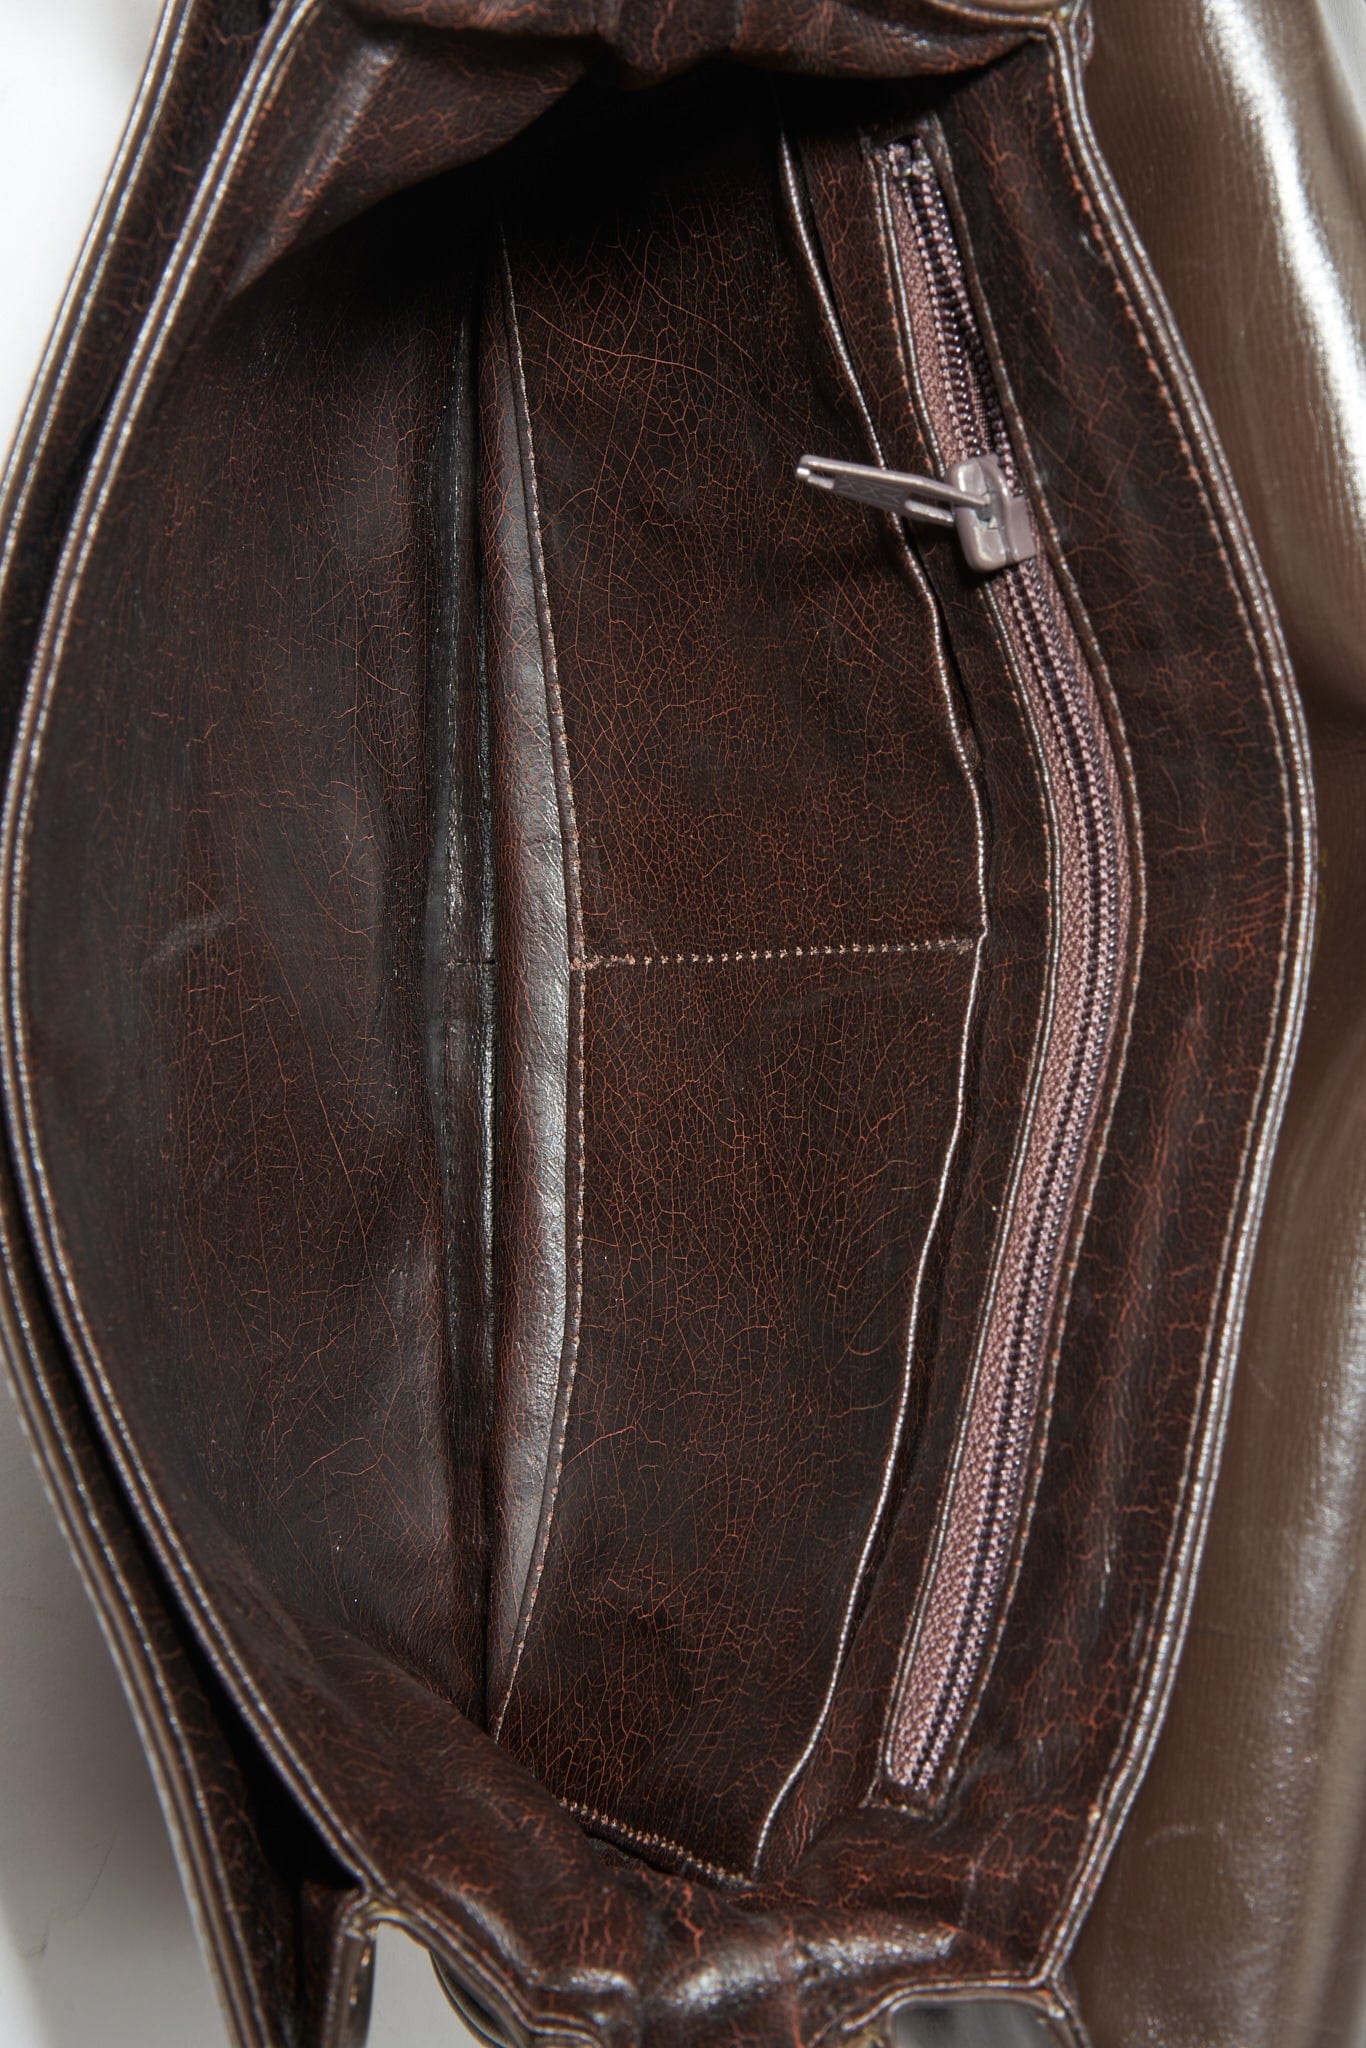 Vintage Loewe Brown Leather Crossbody